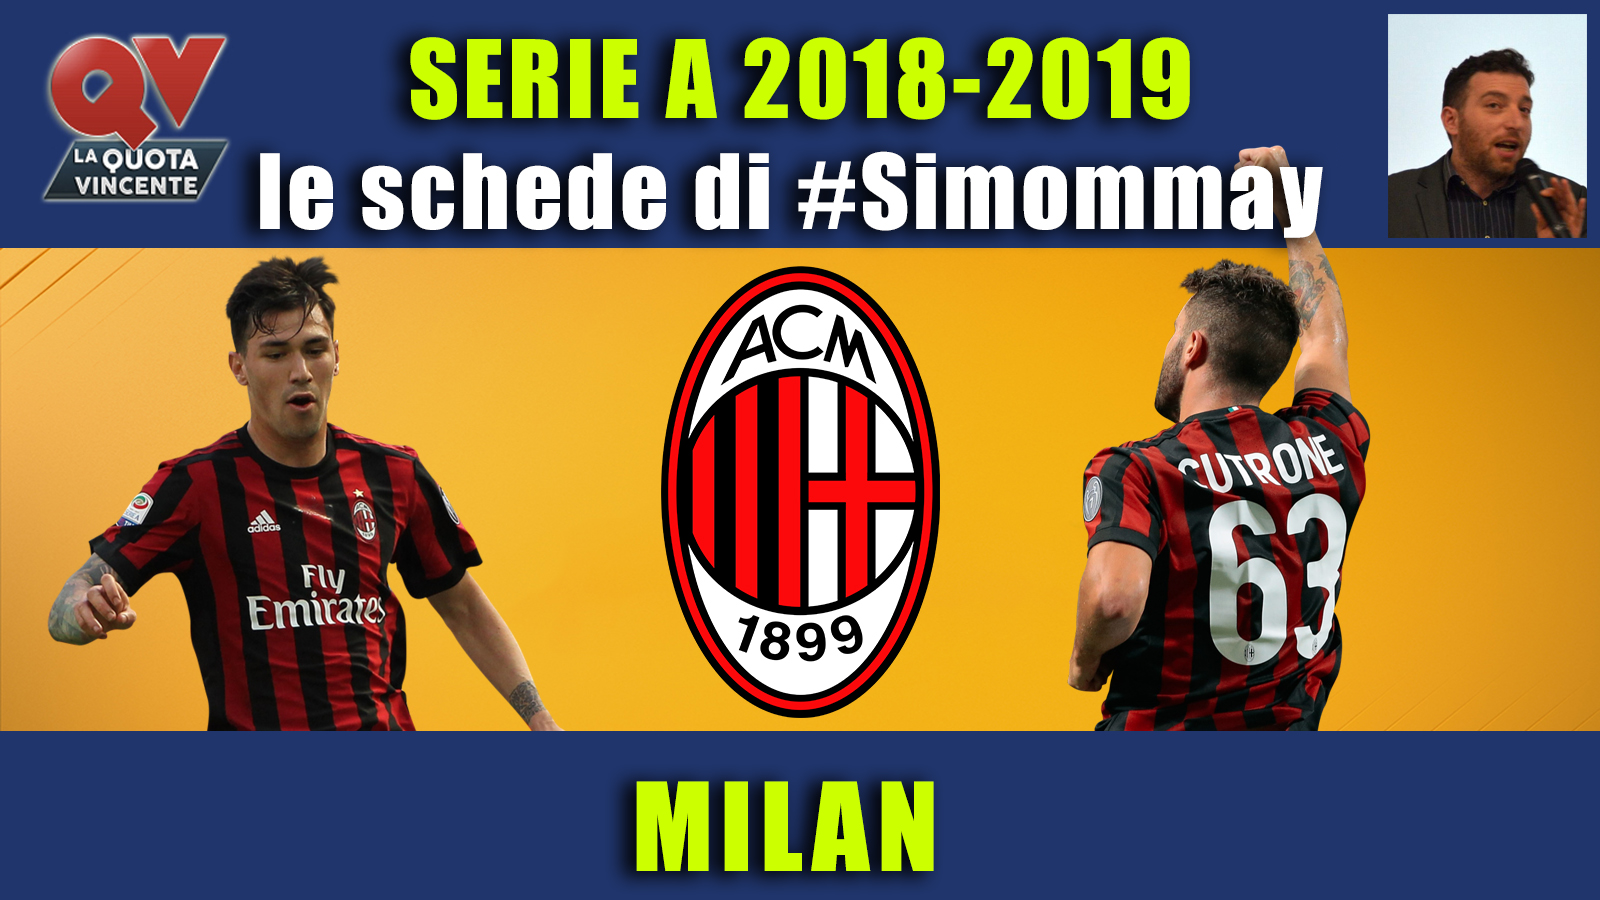 Guida Serie A 2018-2019 MILAN: la nuova vita del diavolo